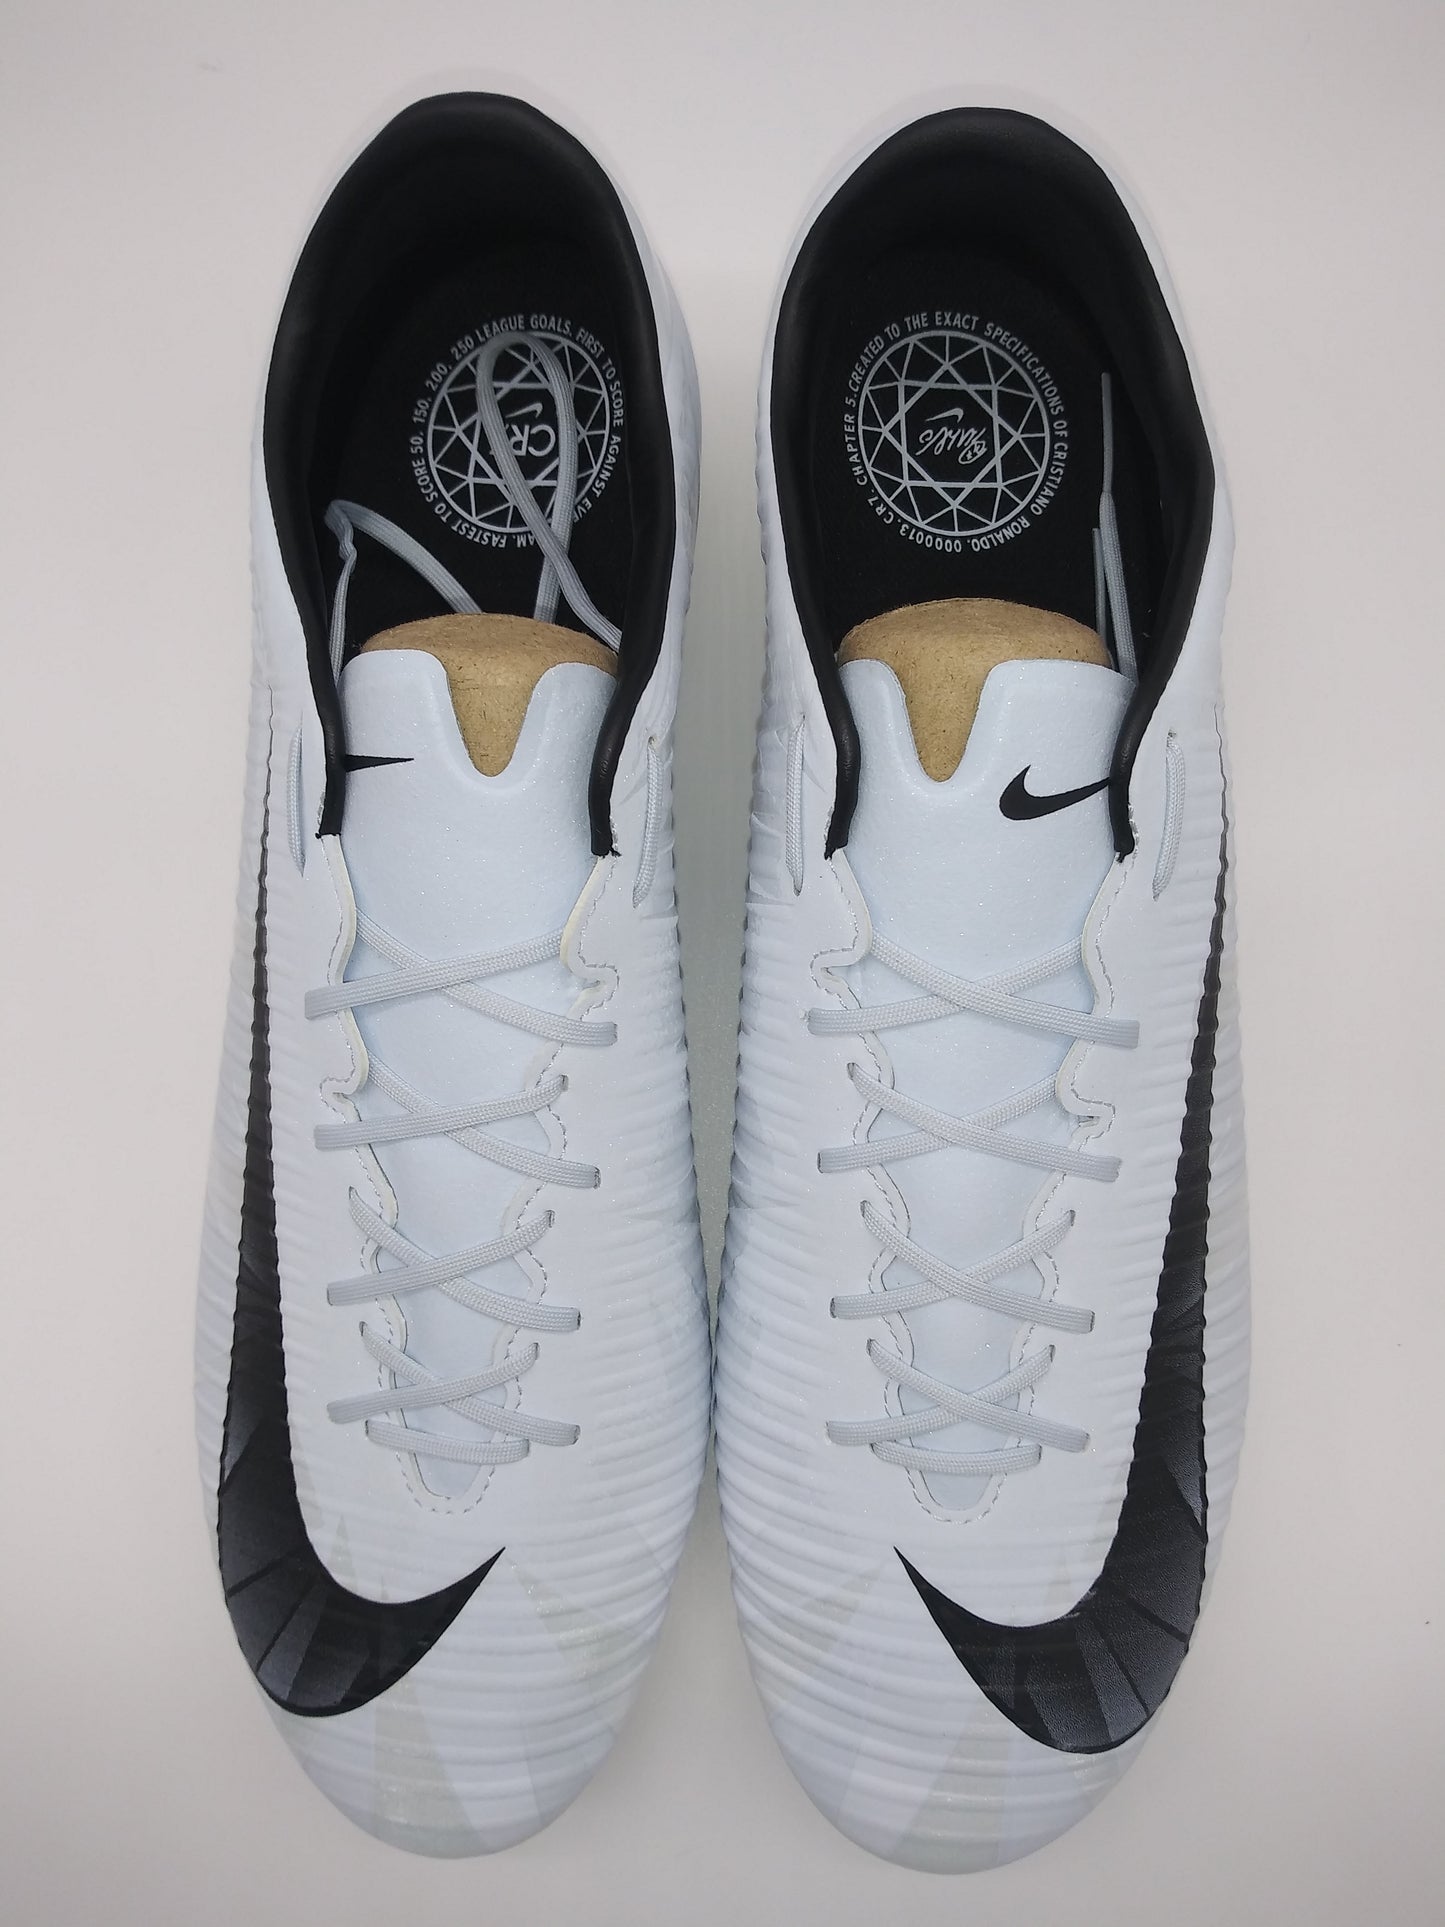 Nike Mercurial Veloce III CR7 FG White Cleats